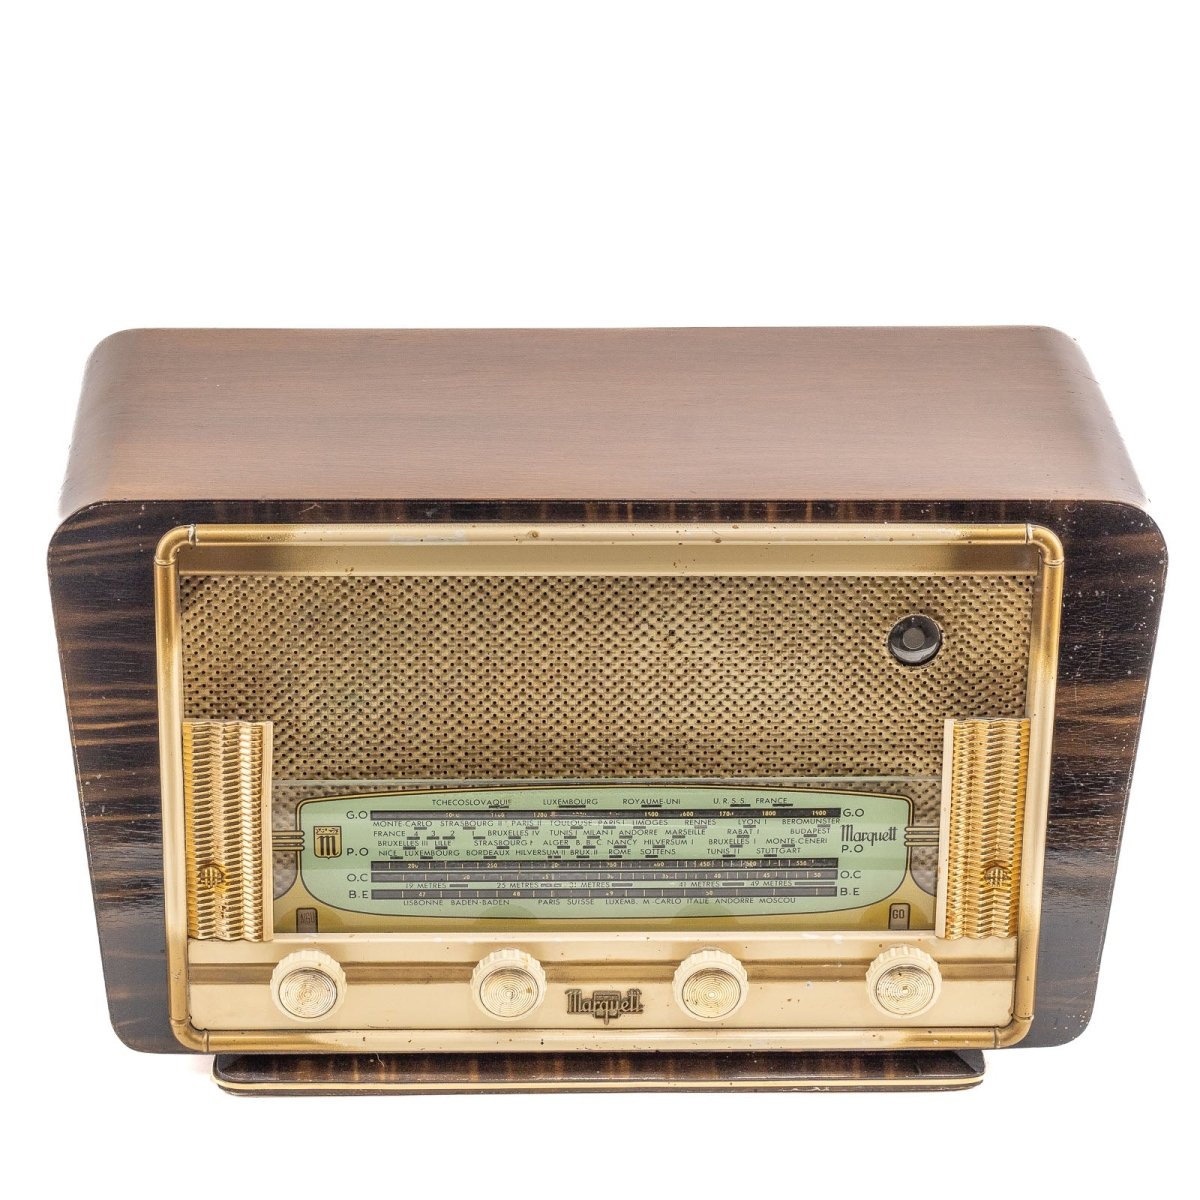 Radio Bluetooth Marquett Vintage 50’S enceinte connectée française haut de gamme absolument prodige radio vintage